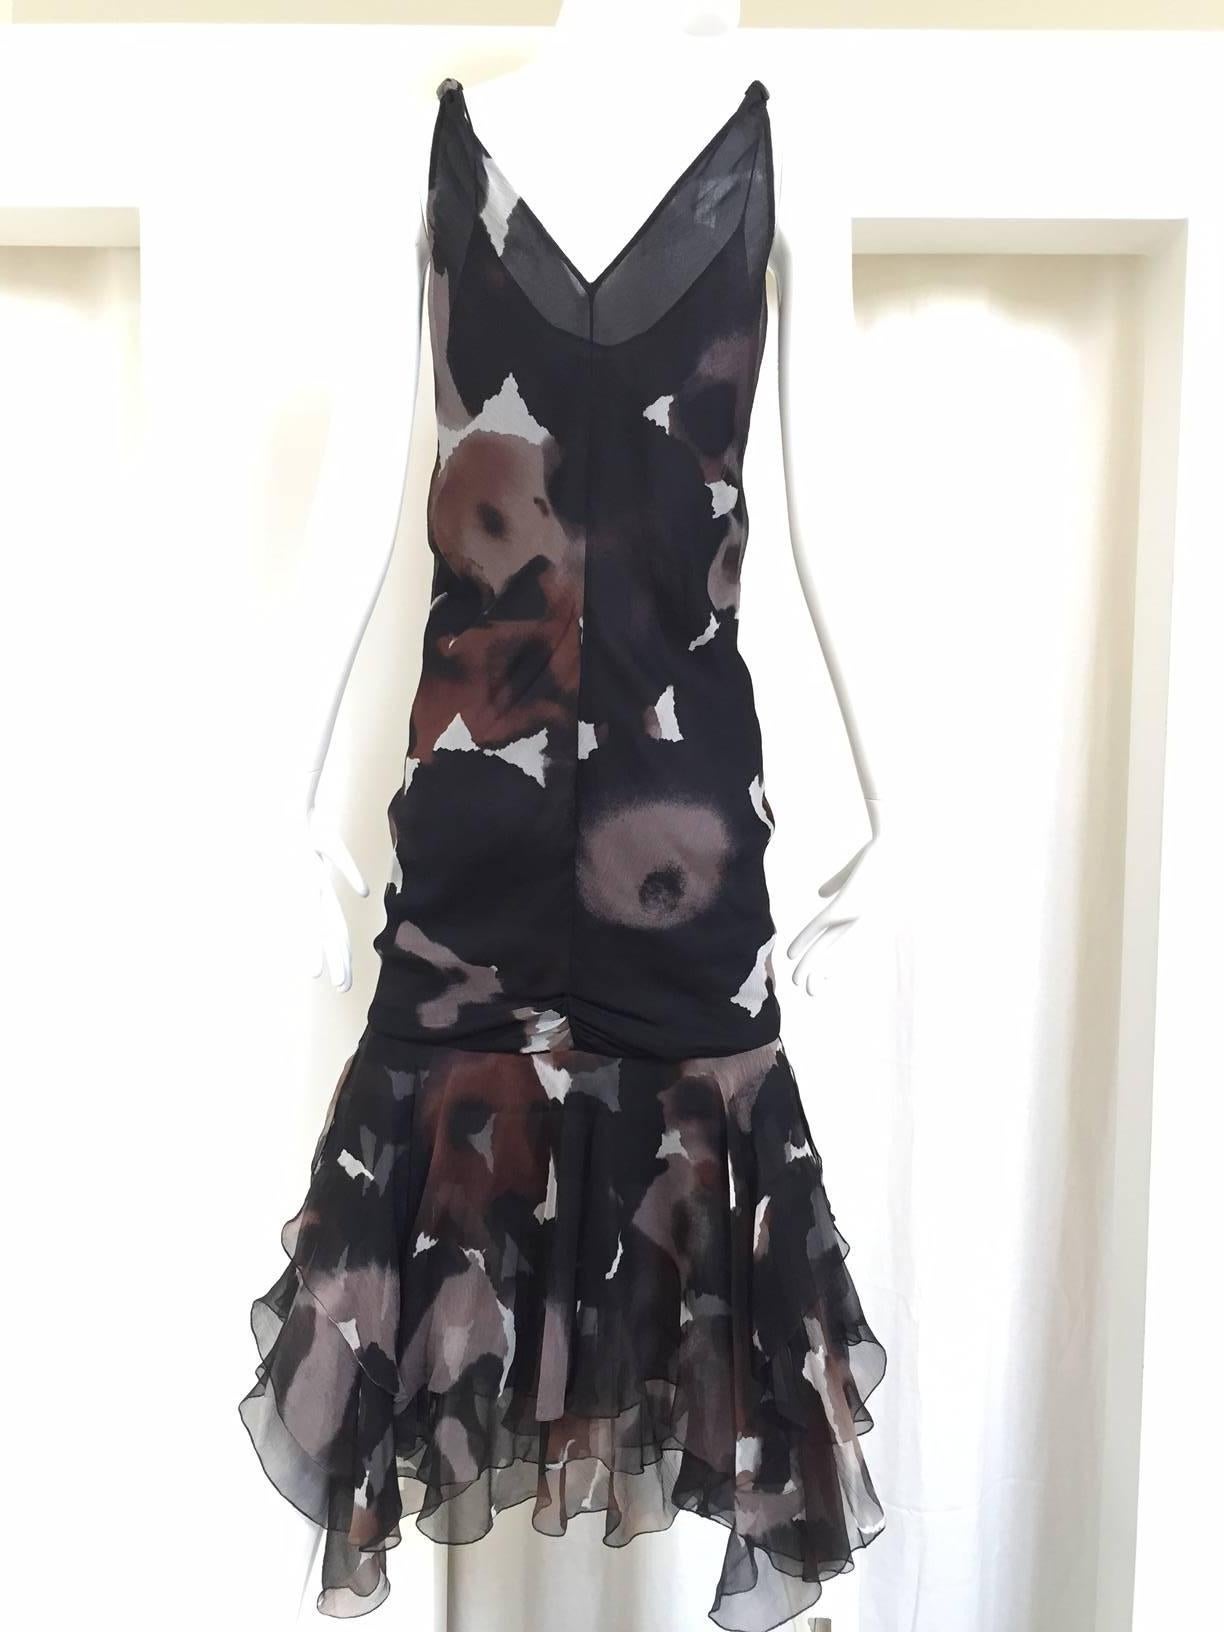 Beautiful J Mendel silk chiffon print dress.
Bust: 32